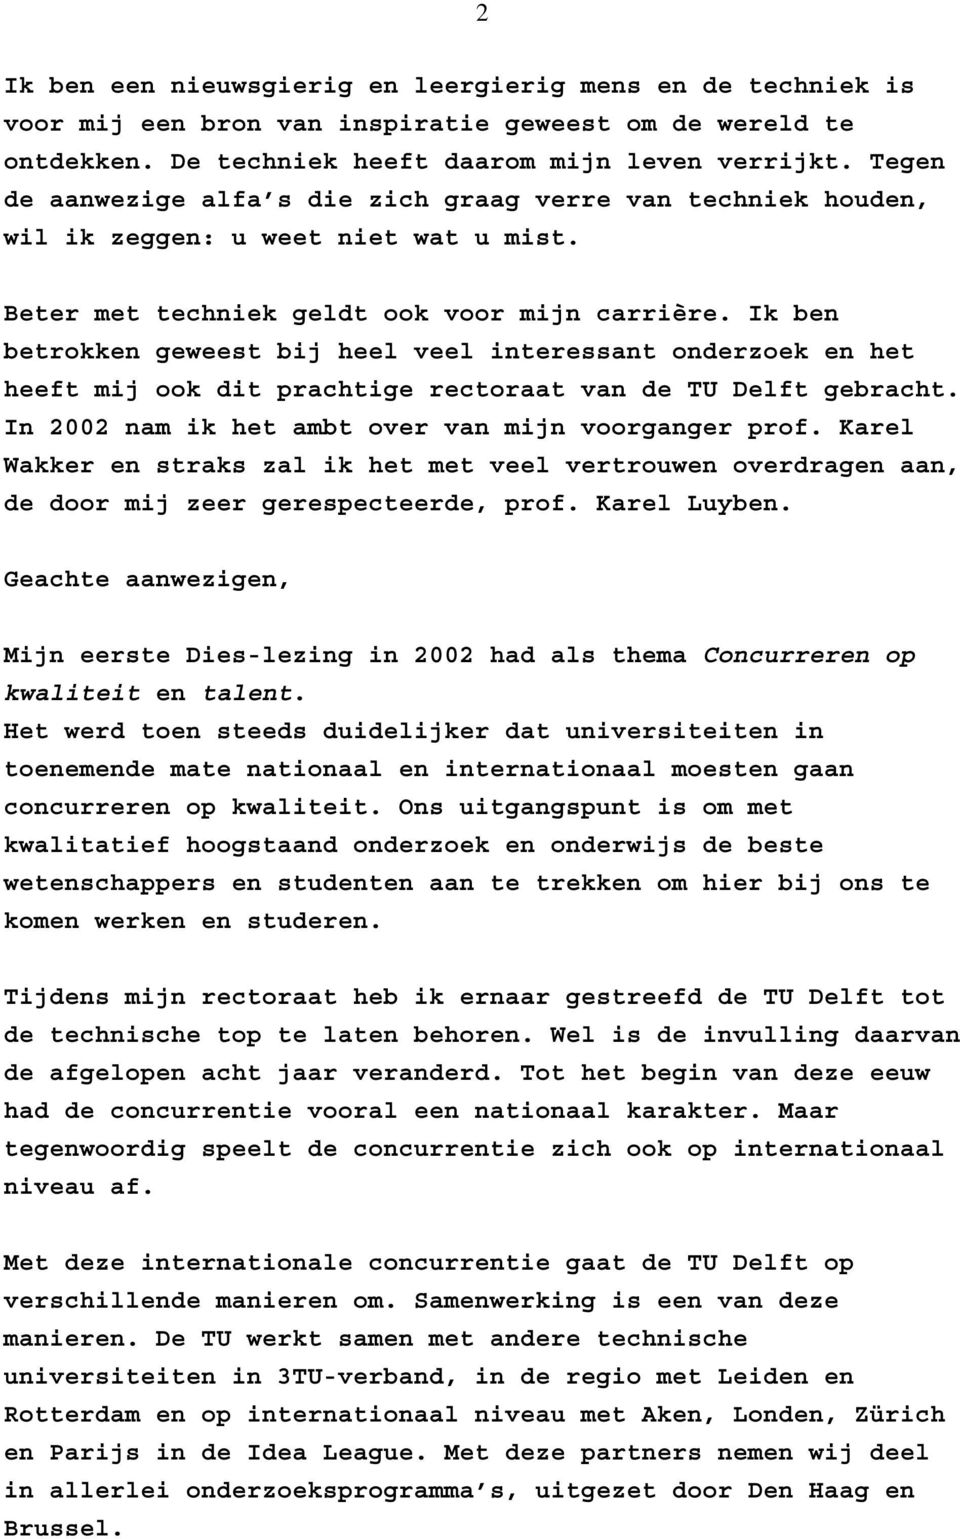 Ik ben betrokken geweest bij heel veel interessant onderzoek en het heeft mij ook dit prachtige rectoraat van de TU Delft gebracht. In 2002 nam ik het ambt over van mijn voorganger prof.